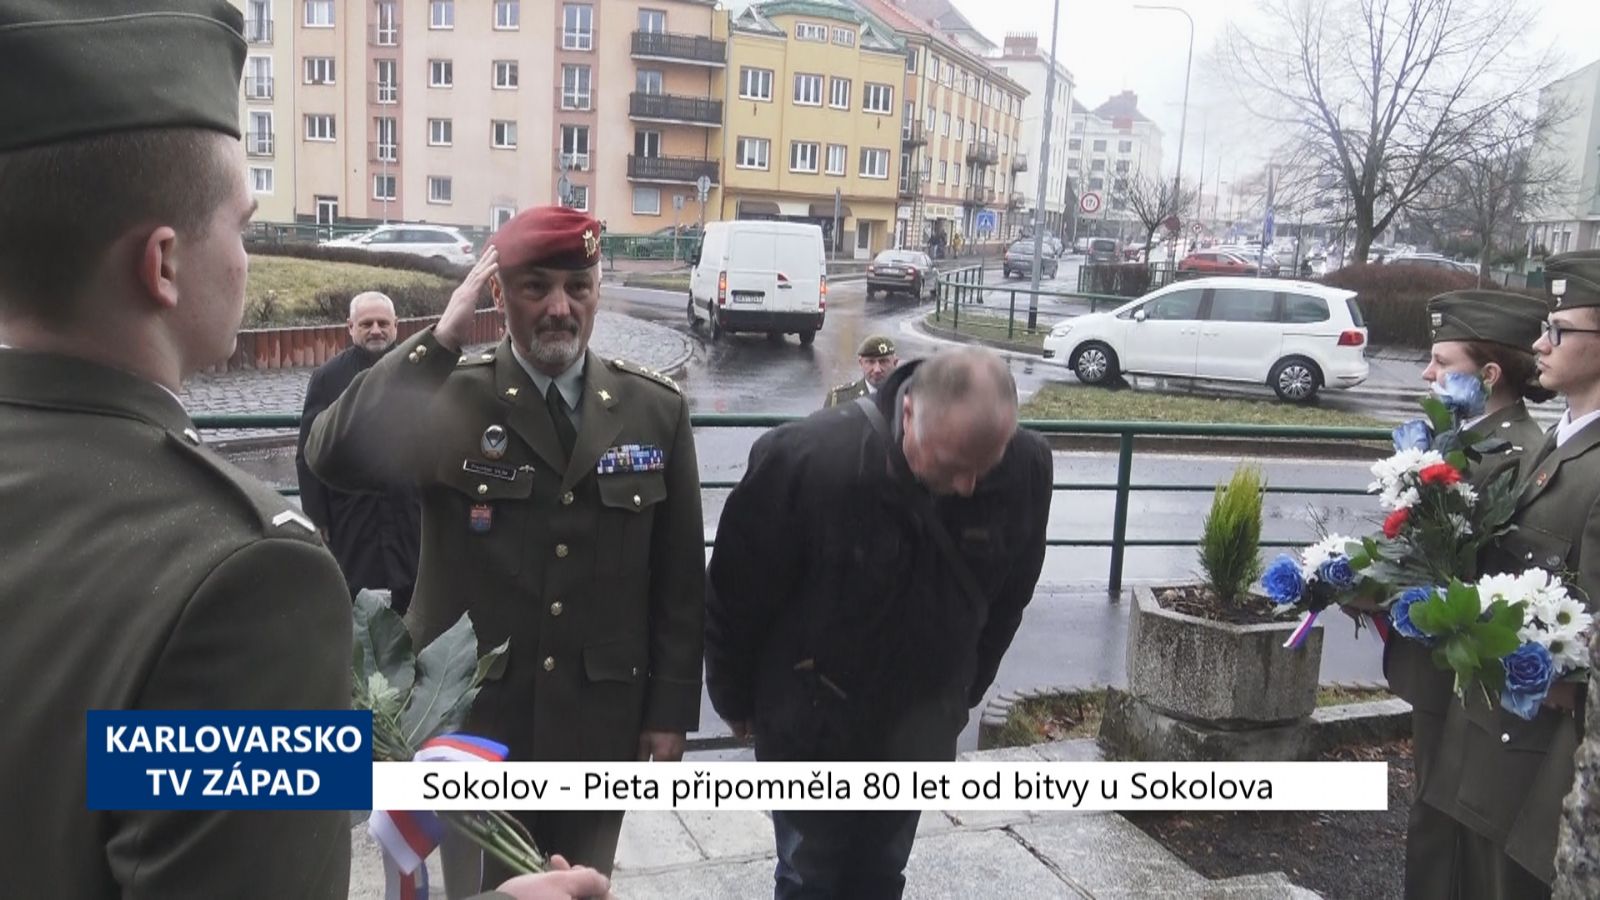 Sokolov: Pieta připomněla 80 let od bitvy u Sokolova (TV Západ)